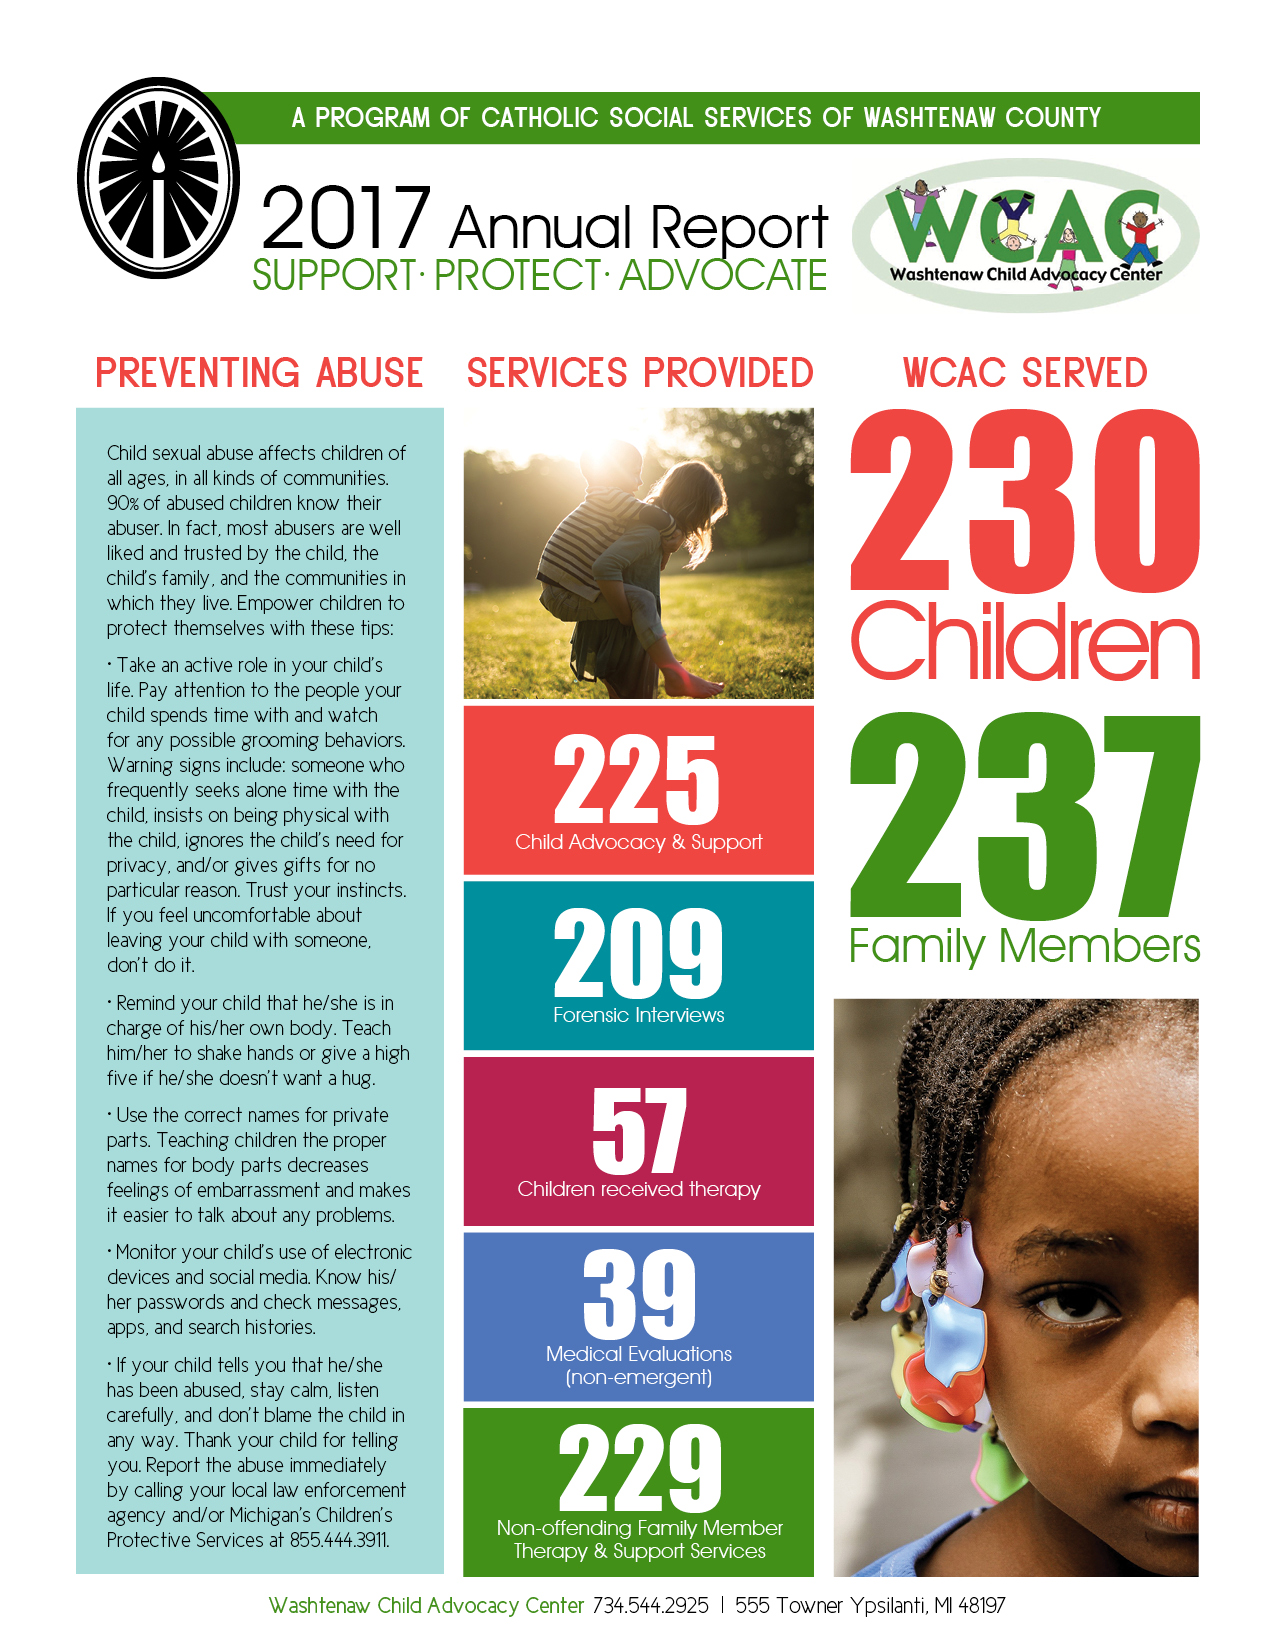 Washtenaw Child Advocacy Center Annual Report: Front Page